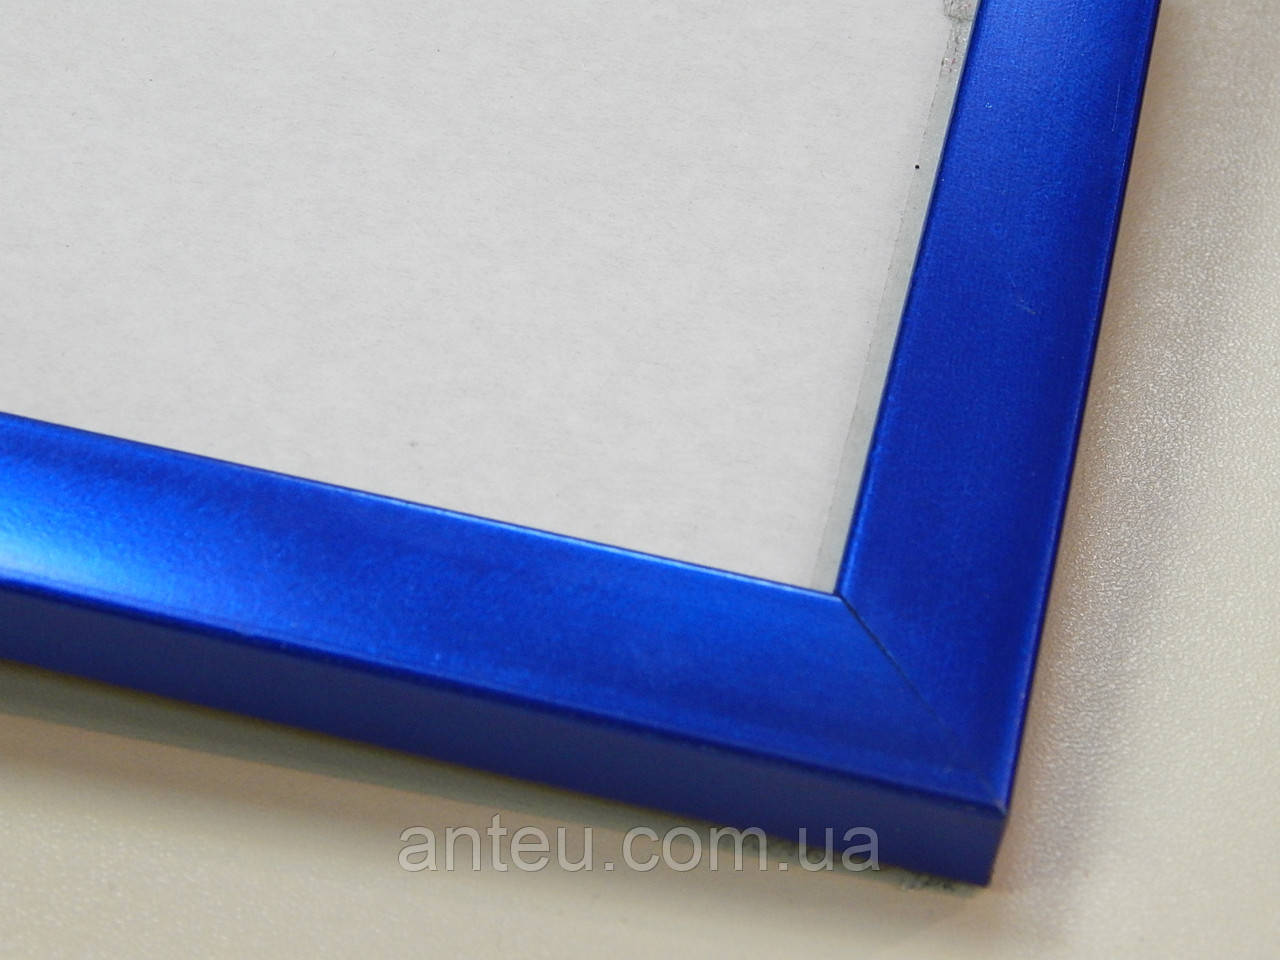 Рамка А4 (219х297). Рамка 16 мм. Синій металік. Для картин, фото, вишивок